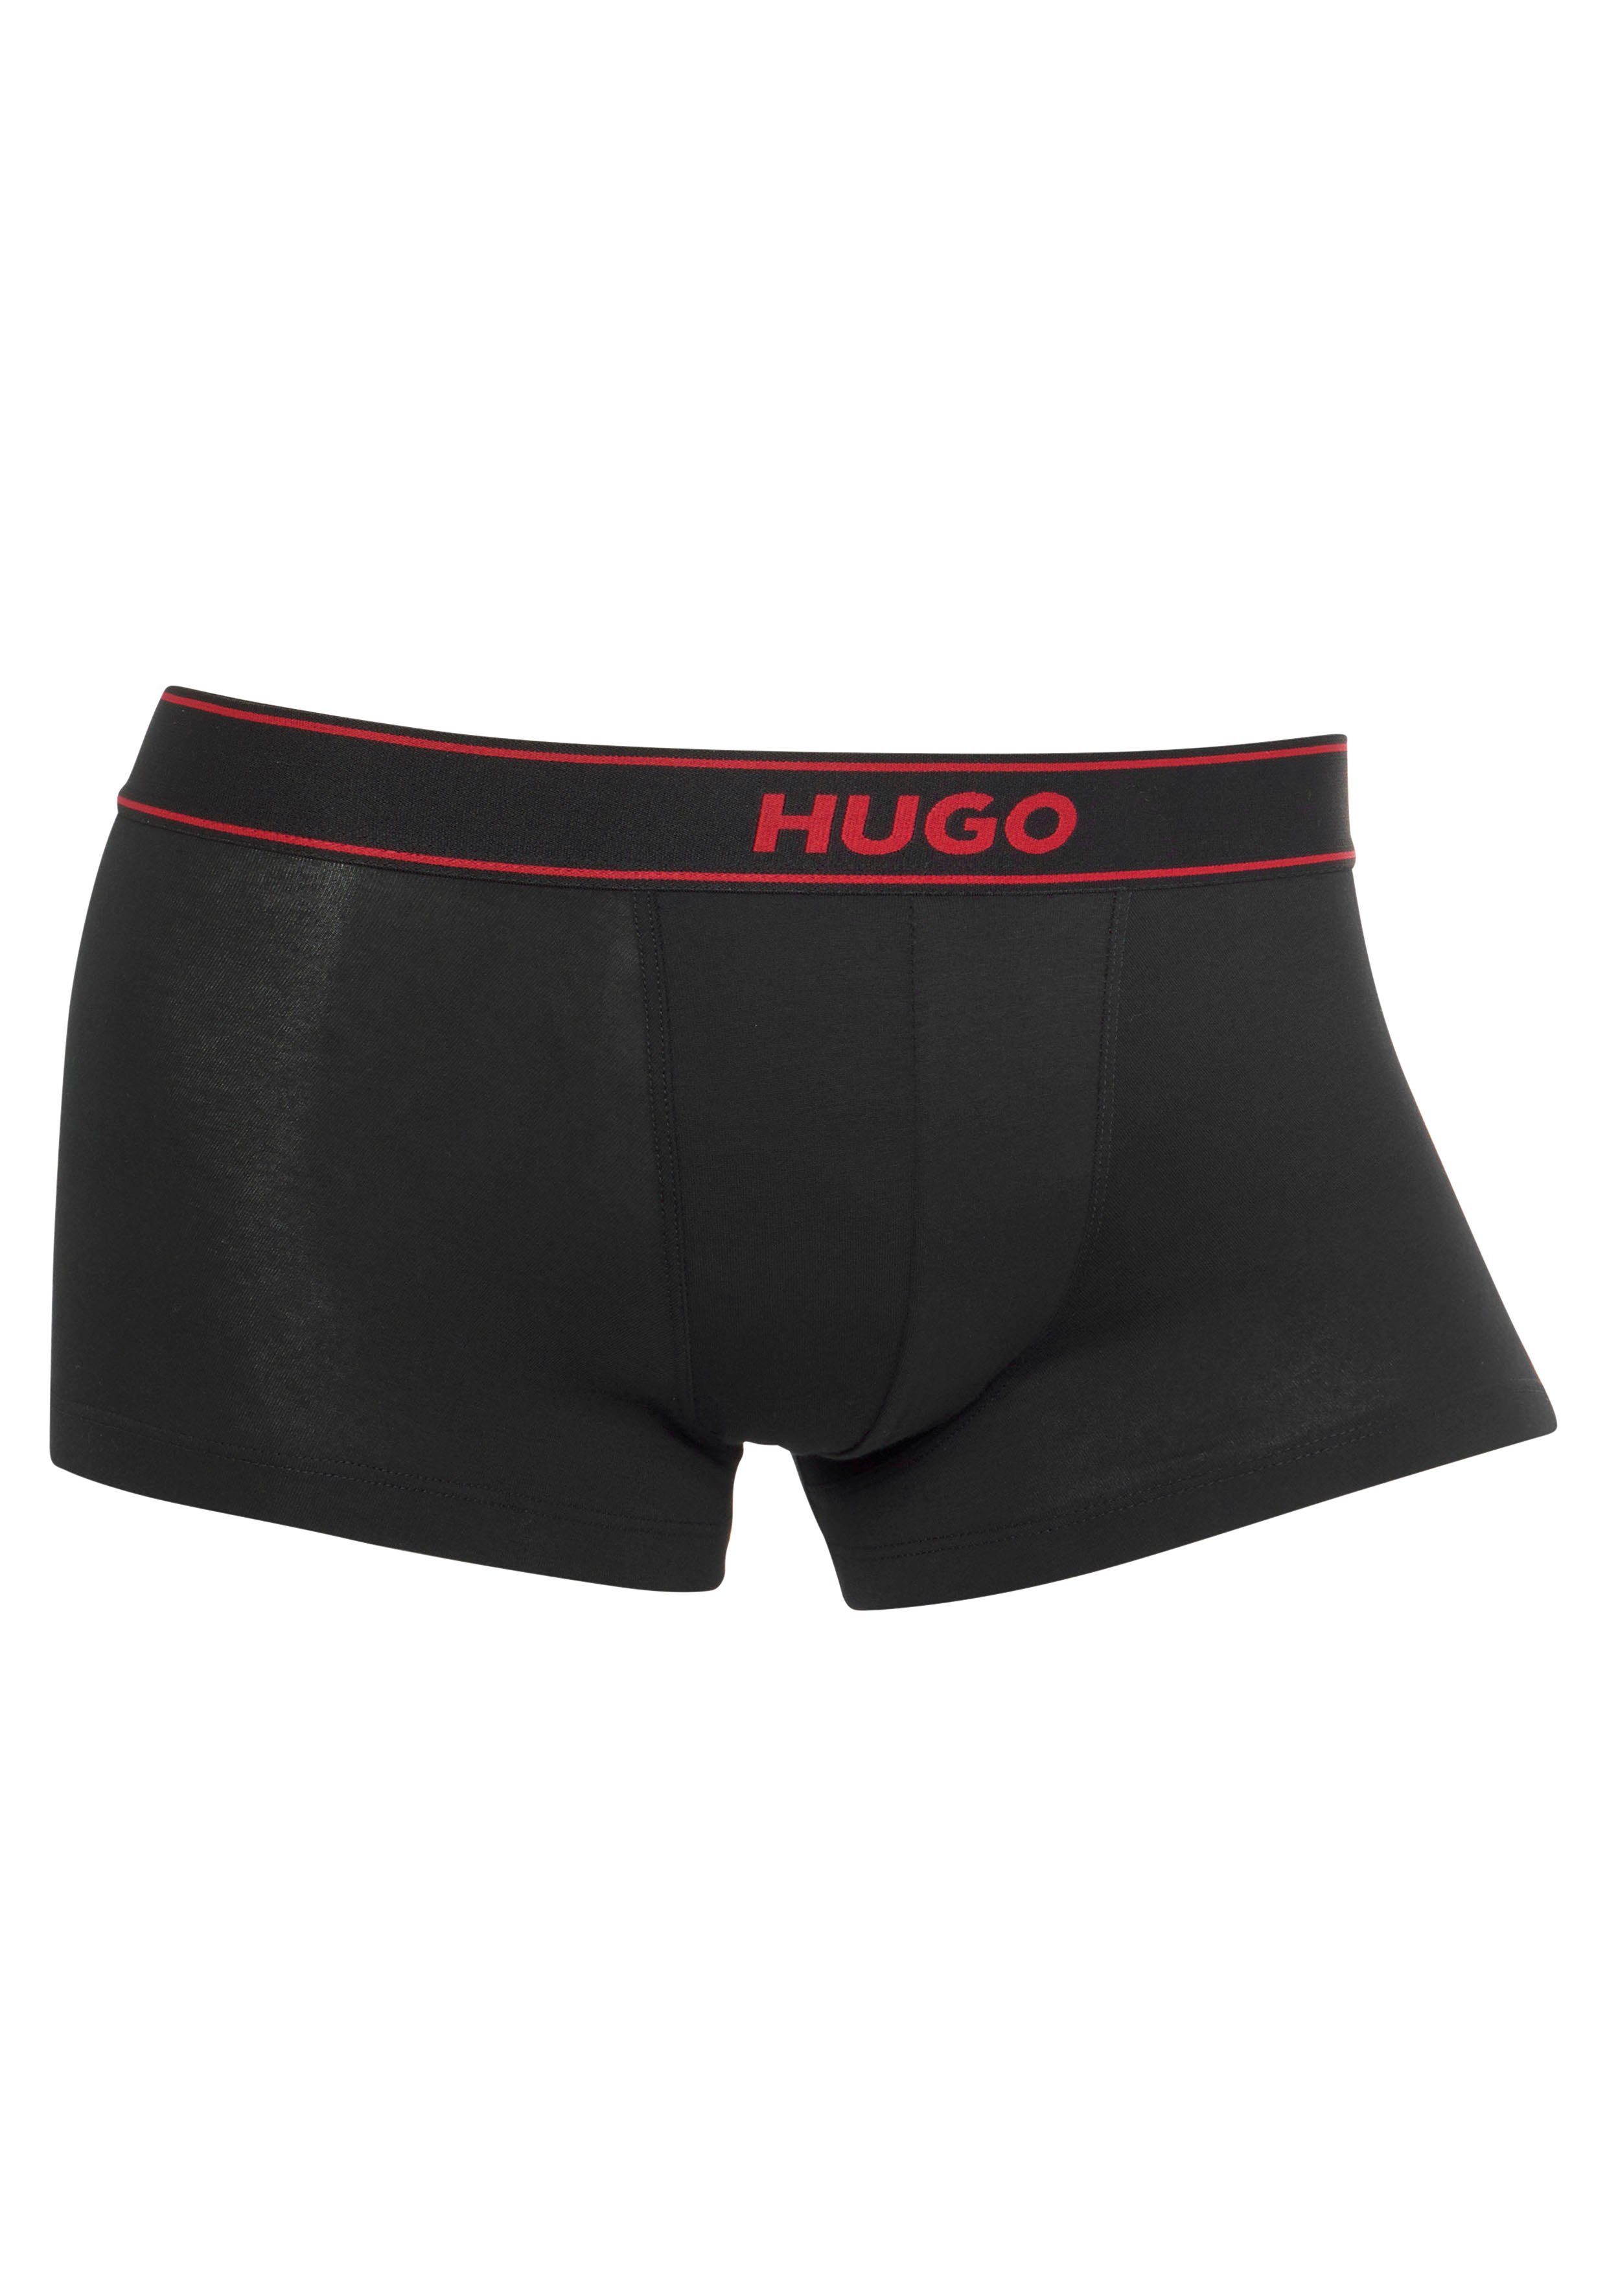 Bein HUGO am mit TRUNK EXCITE Logoschriftzug HUGO Boxershorts seitlich